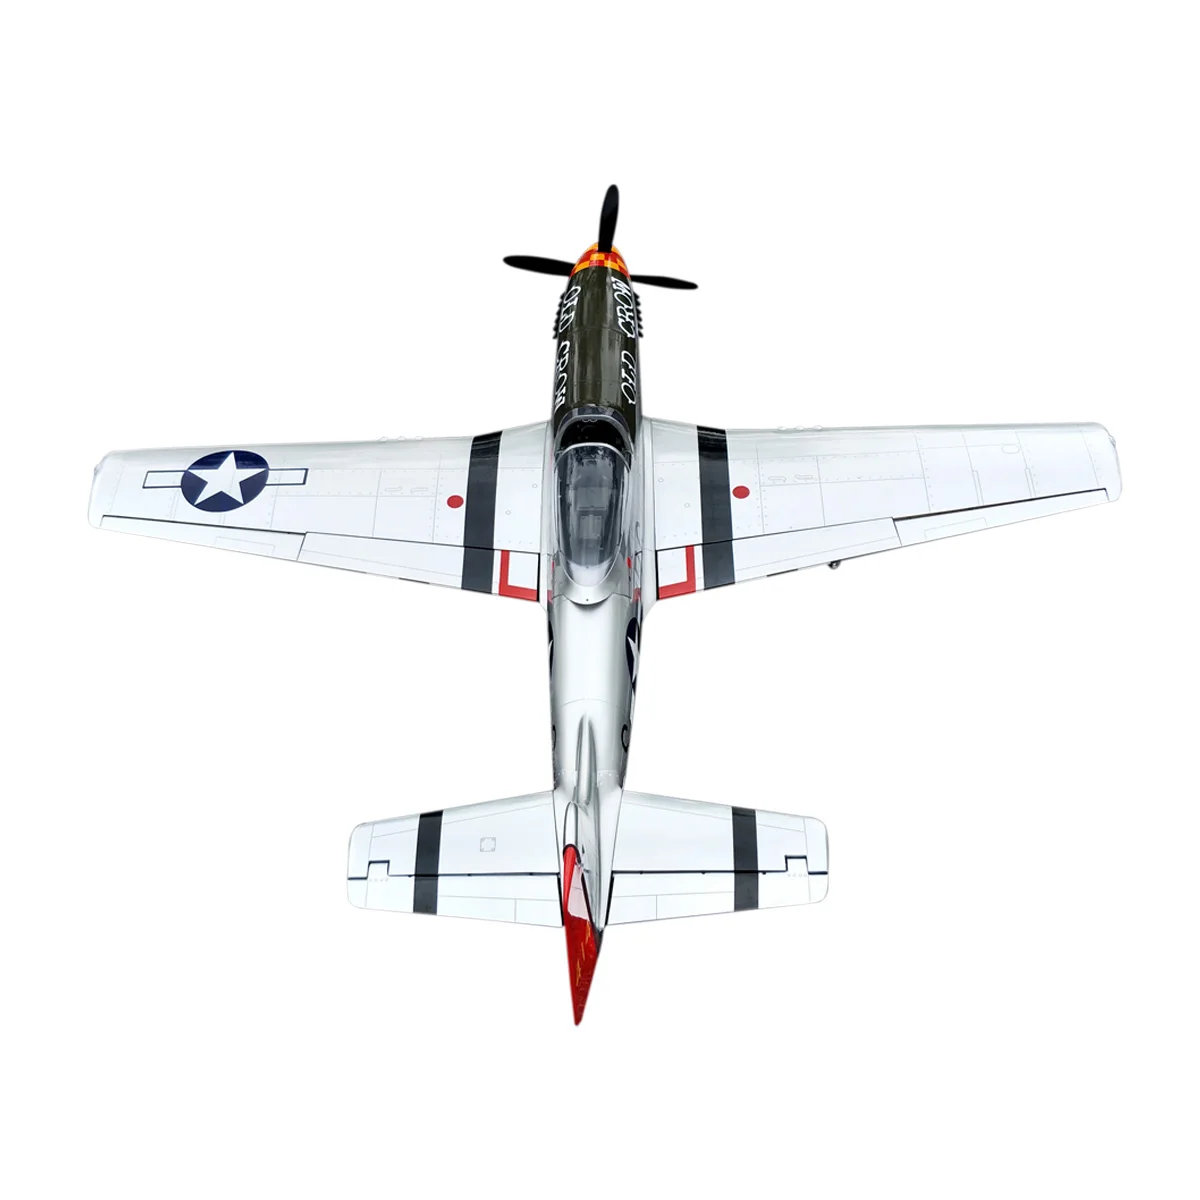 P51 6" RC самолет с неподвижным крылом 20CC пробкового дерева бензиновая модель самолета